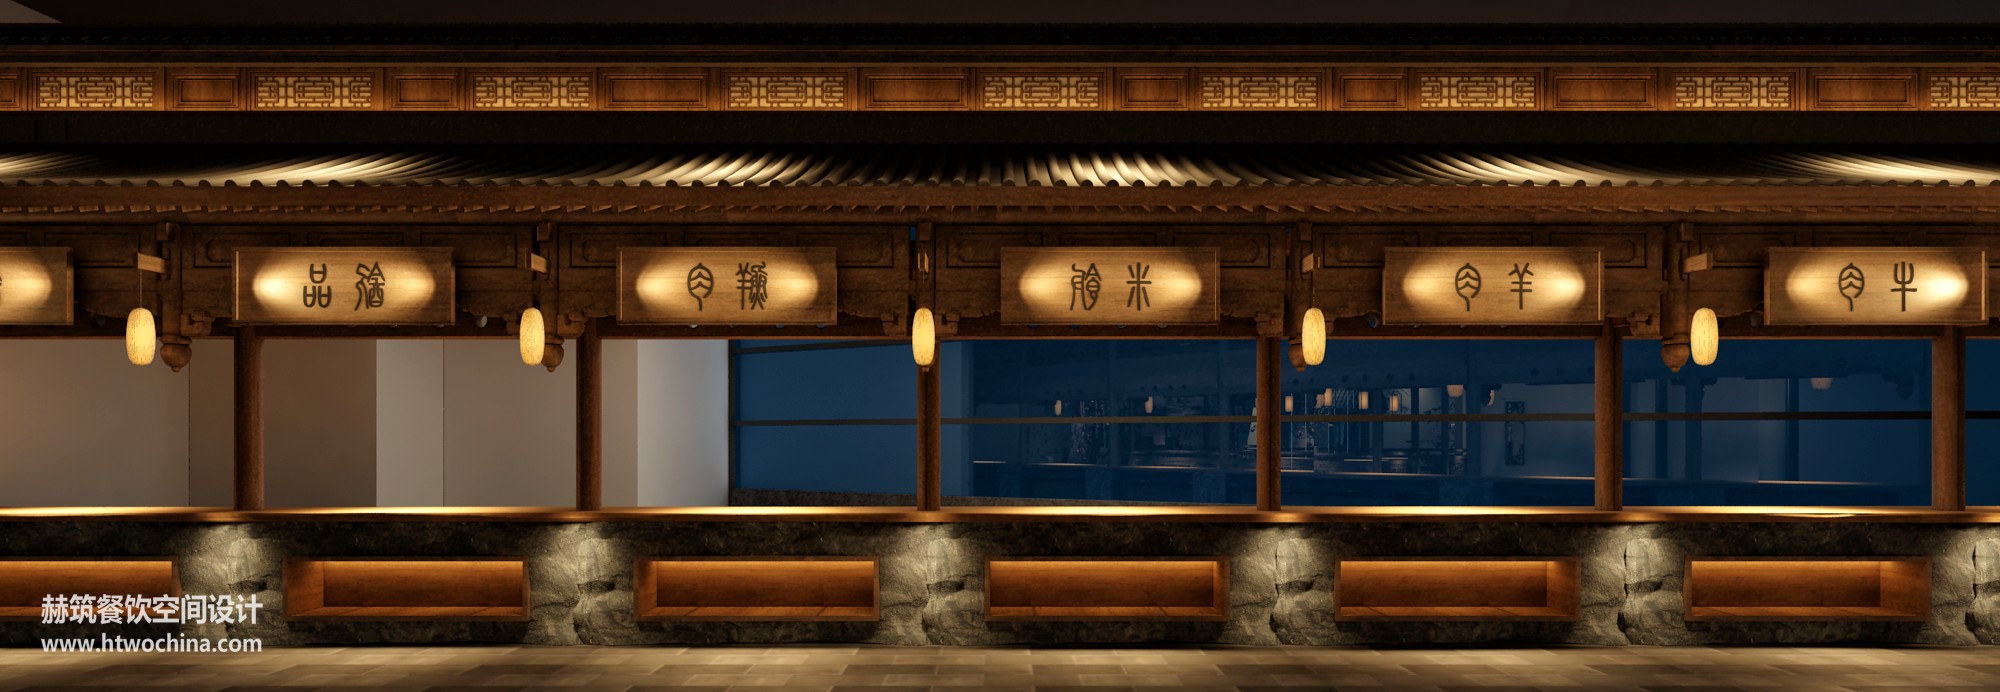 水秀宴-中餐厅设计效果图